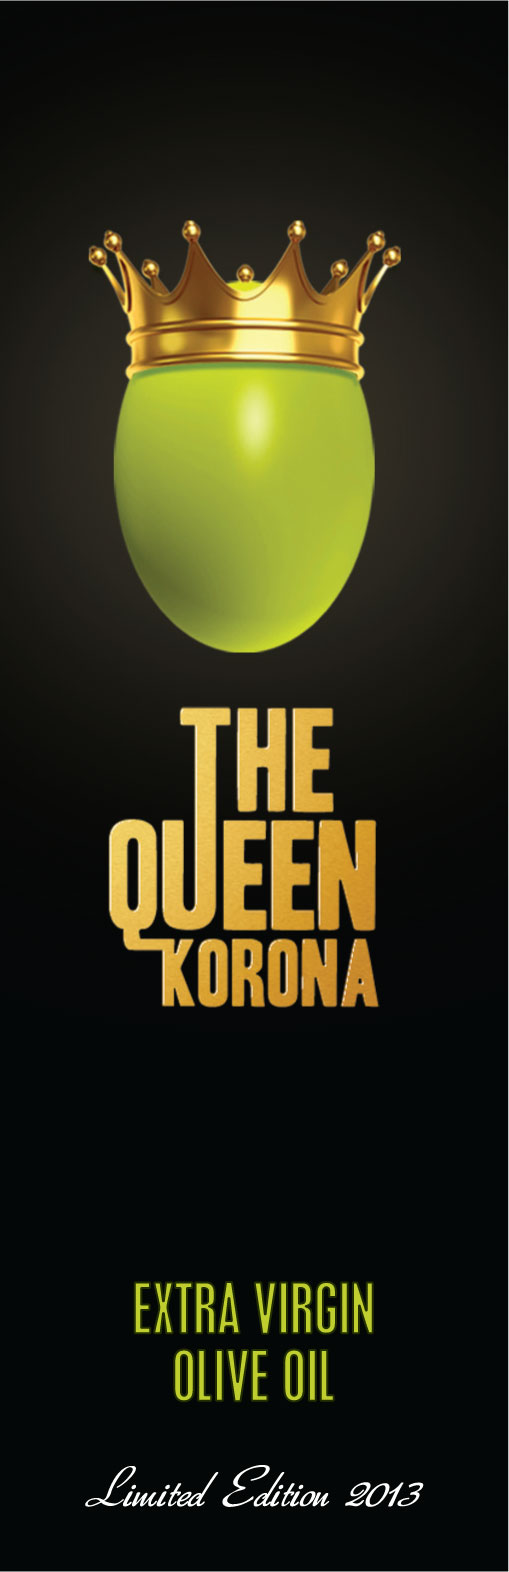 Ετικέτα λαδιού - Queen Korona - Multistick labels